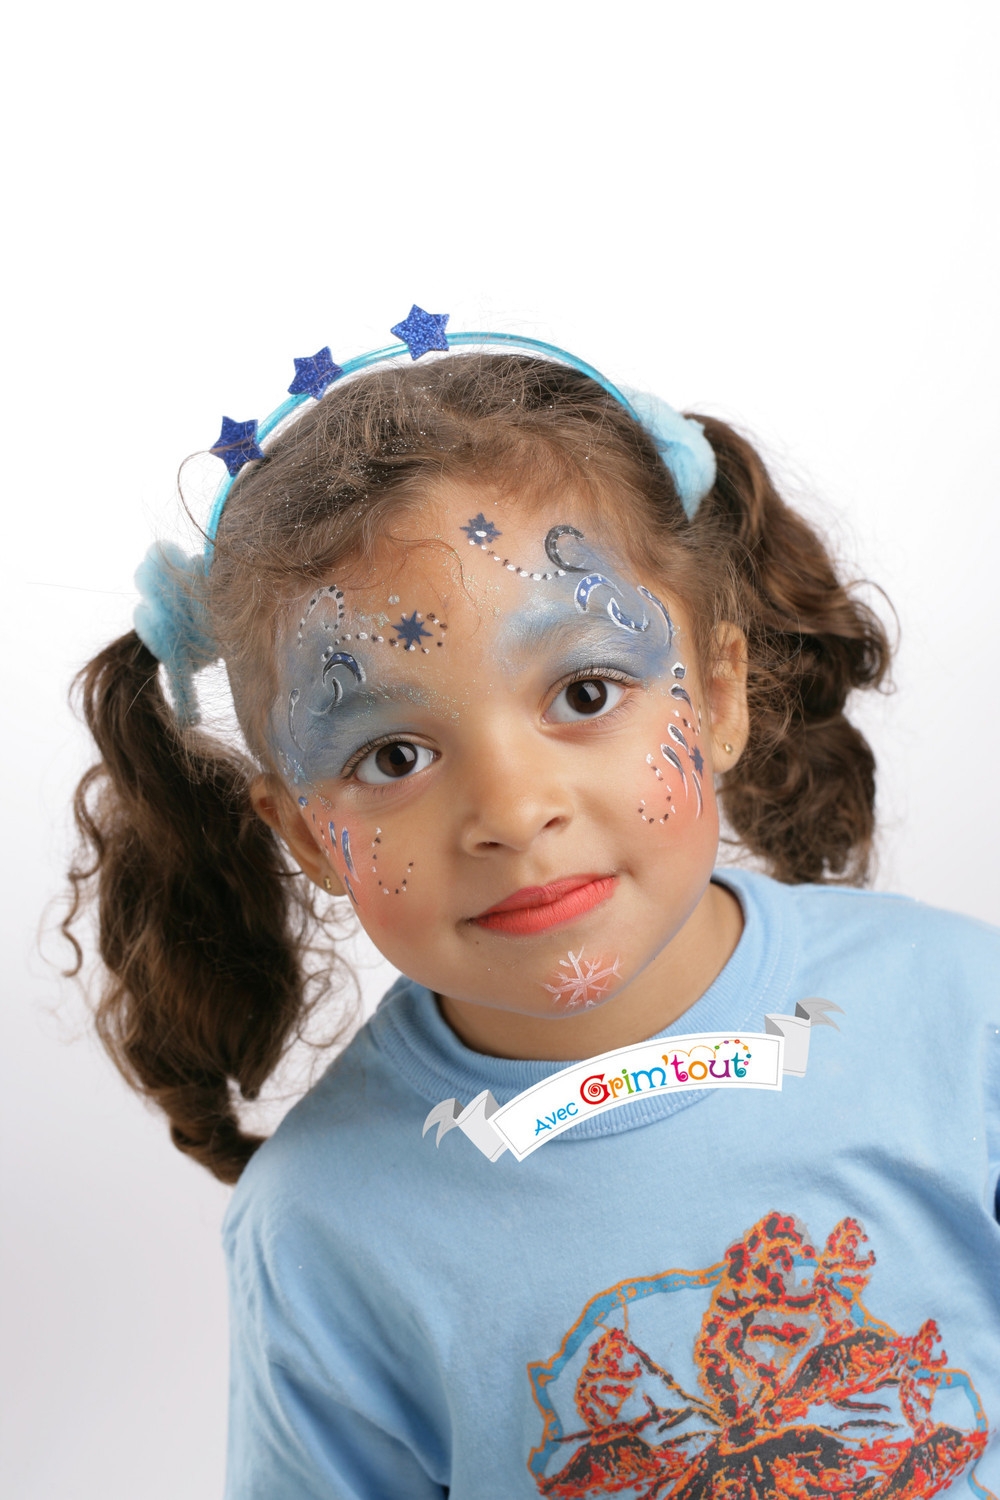 Palette de maquillage pour enfant et être une princesse